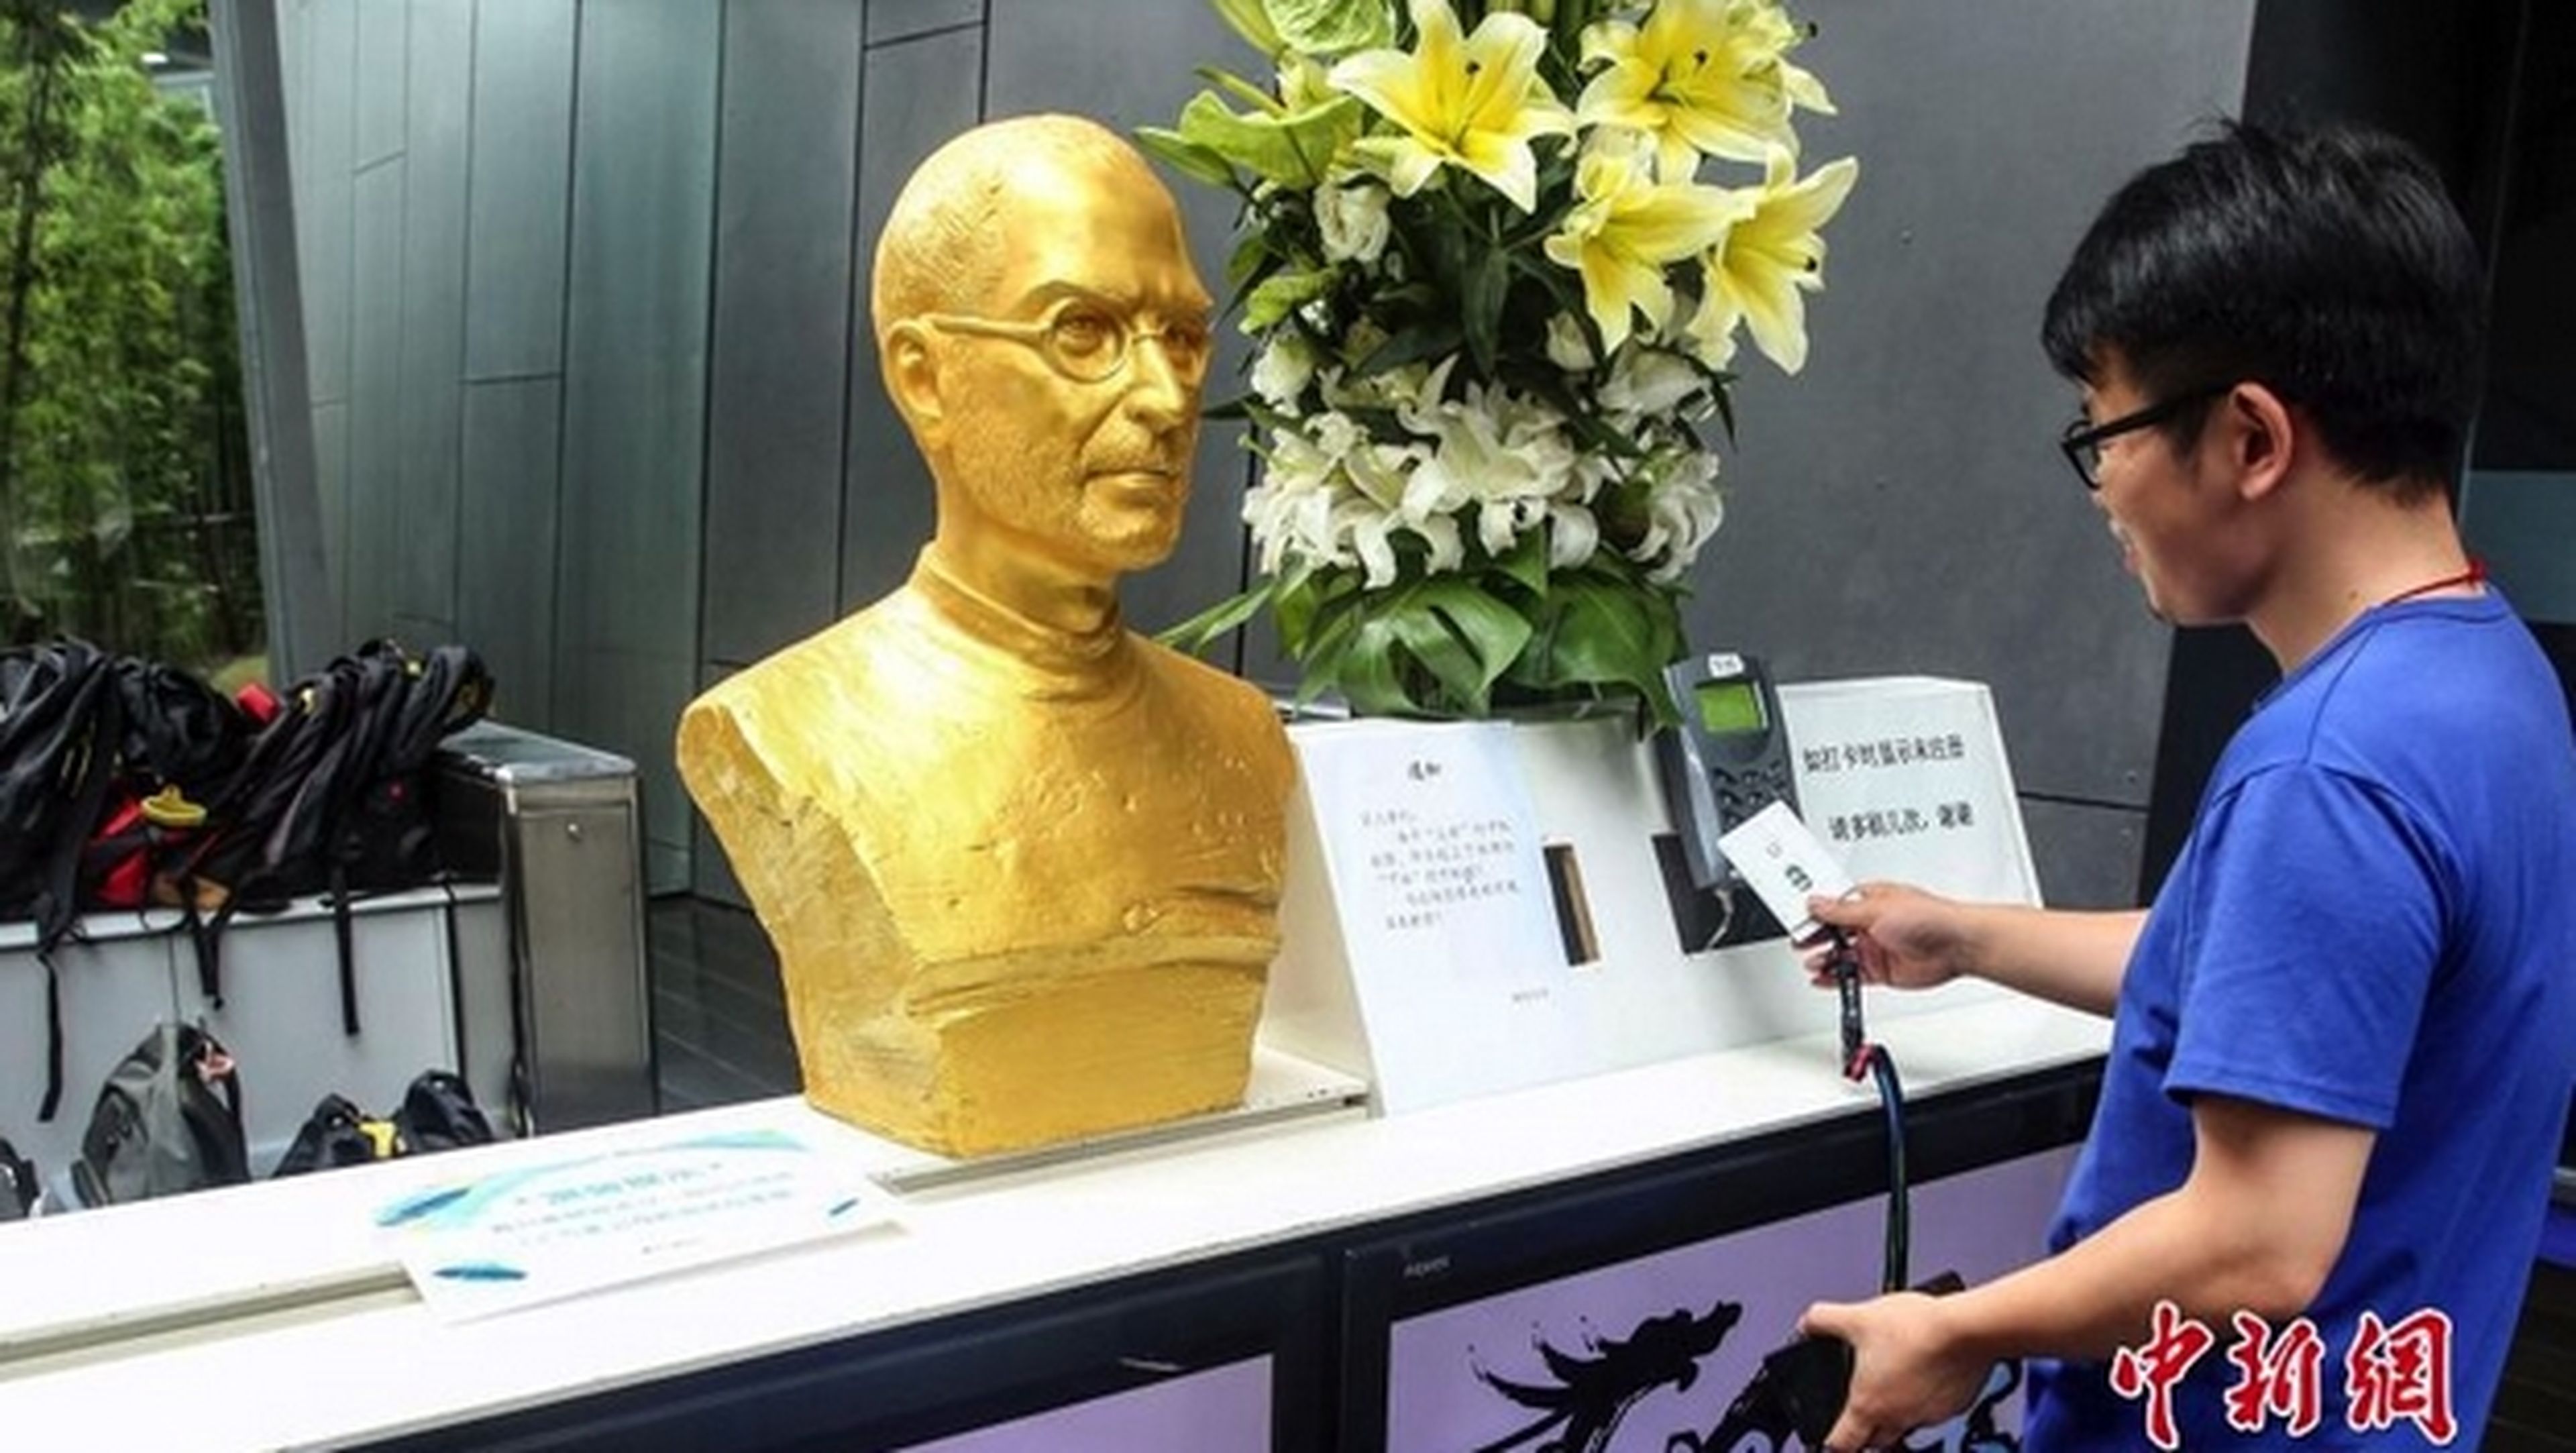 El busto de oro de Steve Jobs para inspirar a los empleados.